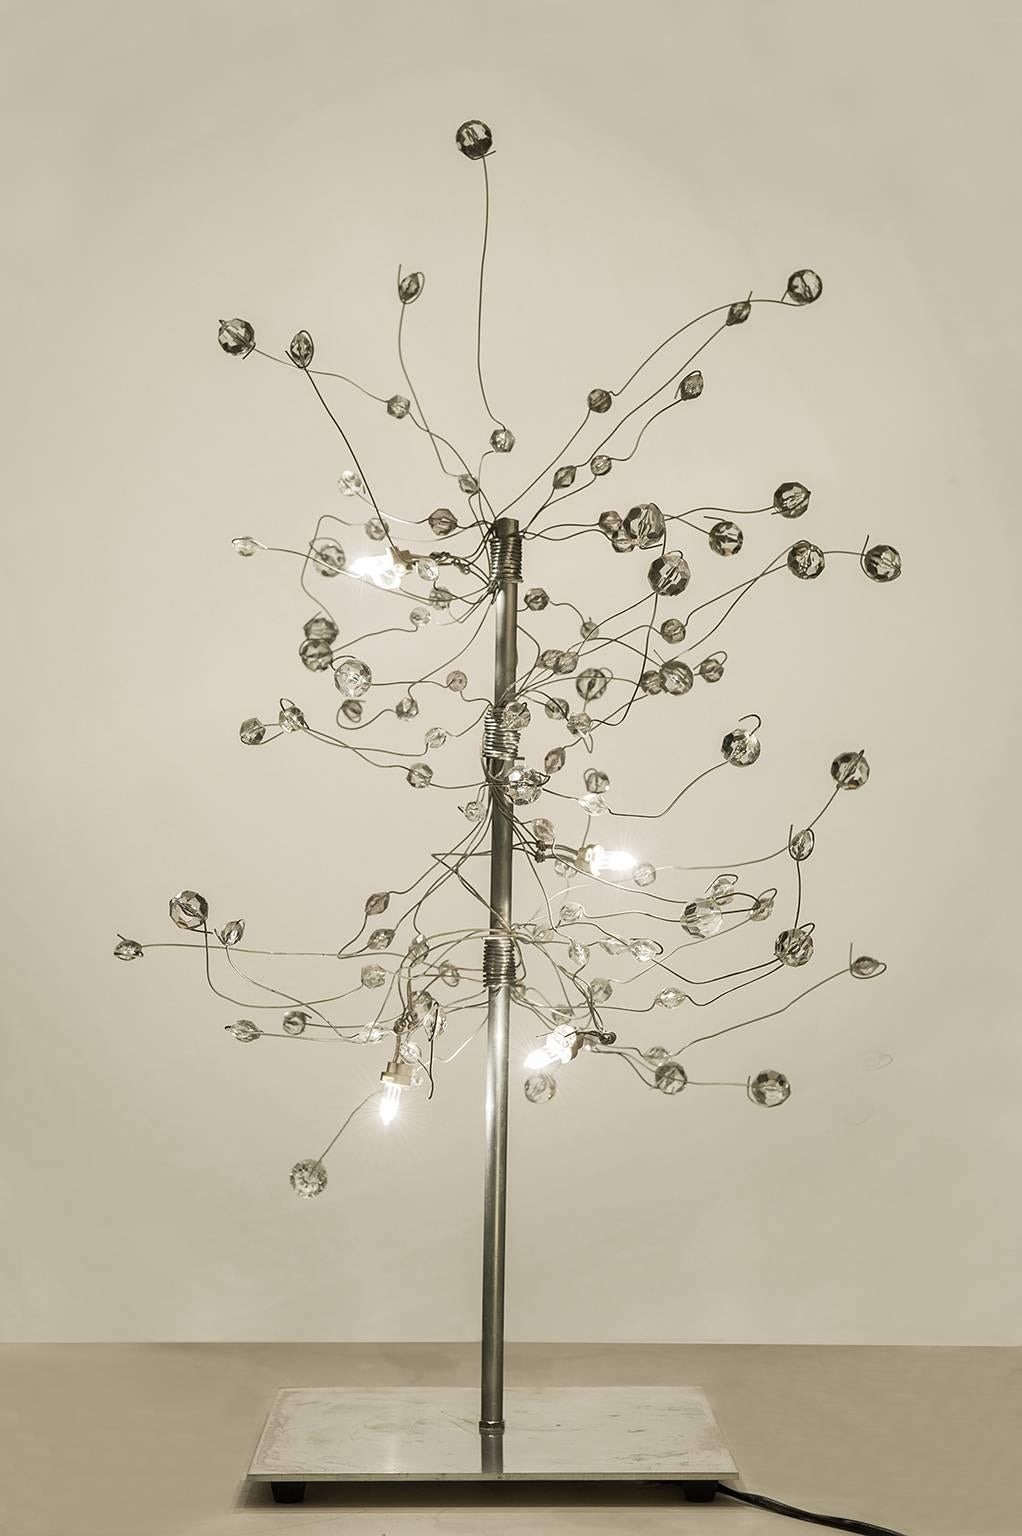 O/5003 -  Table insolite et élégante en forme d'arbre  lampe à led, l'une des premières lampes à led, créée par le  jeune artiste Salih Mehci,  très célèbre en France pour ses incroyables lustres légers et immenses.
Matériaux : Inox et plexiglas.